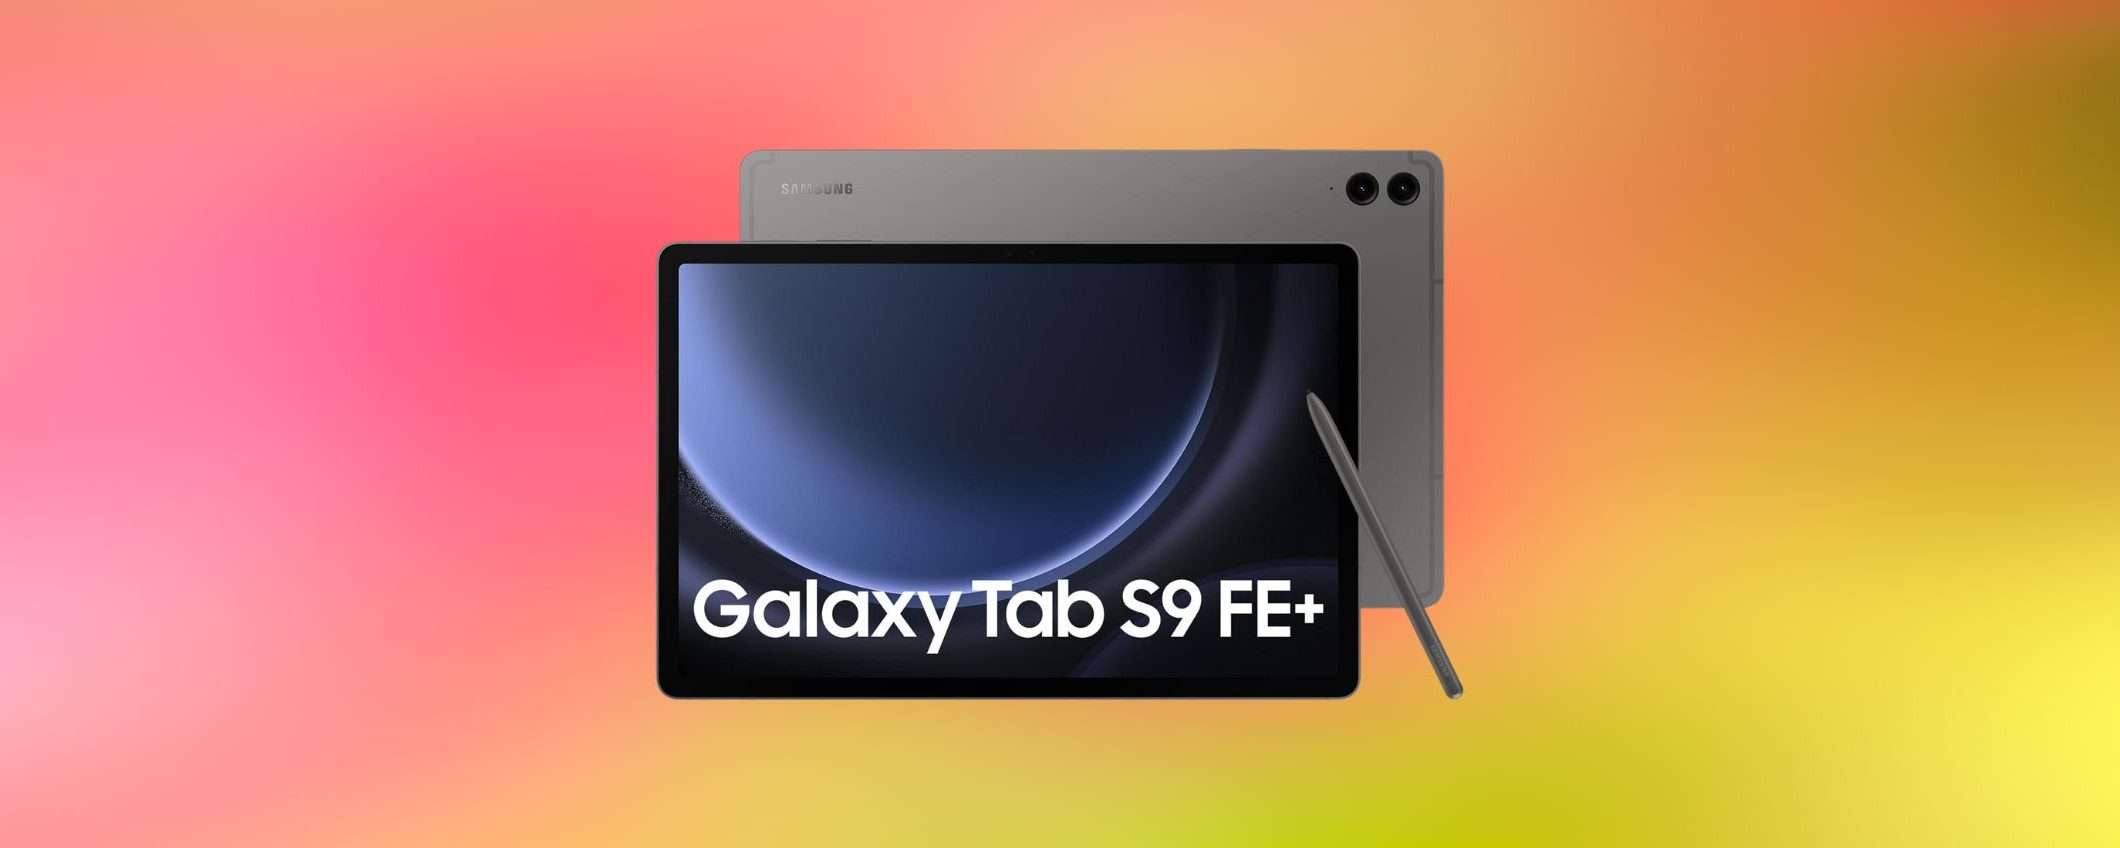 Samsung Galaxy Tab S9 FE con S Pen in offertissima su Amazon: tuo a meno di 450€